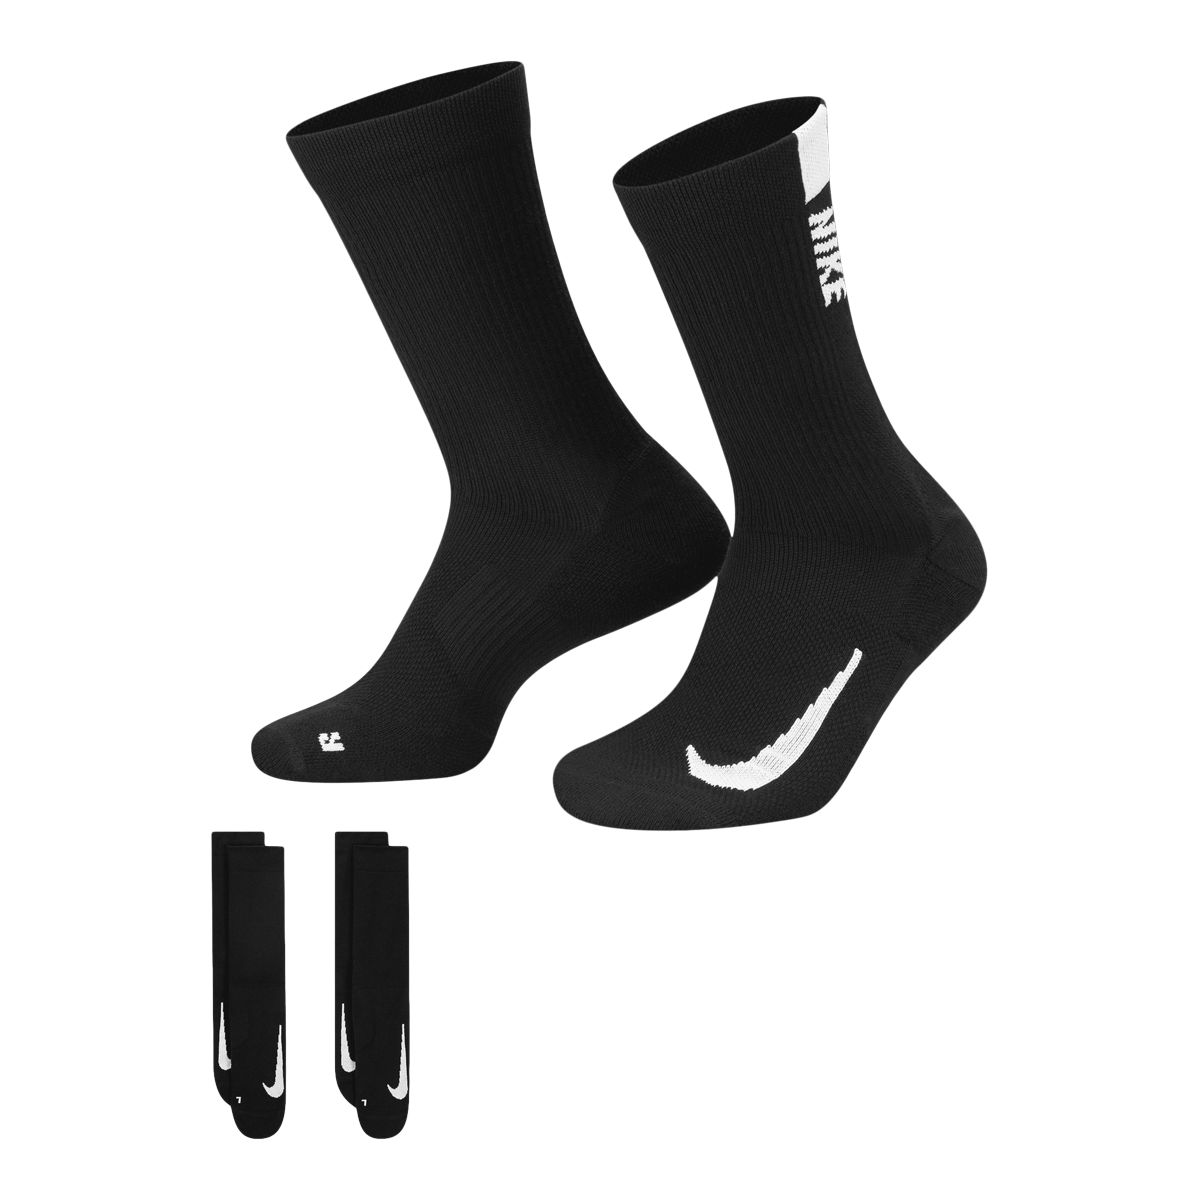 Nike Men's Run Multiplier Crew Socks, Moisture-Wicking, 2-Pack